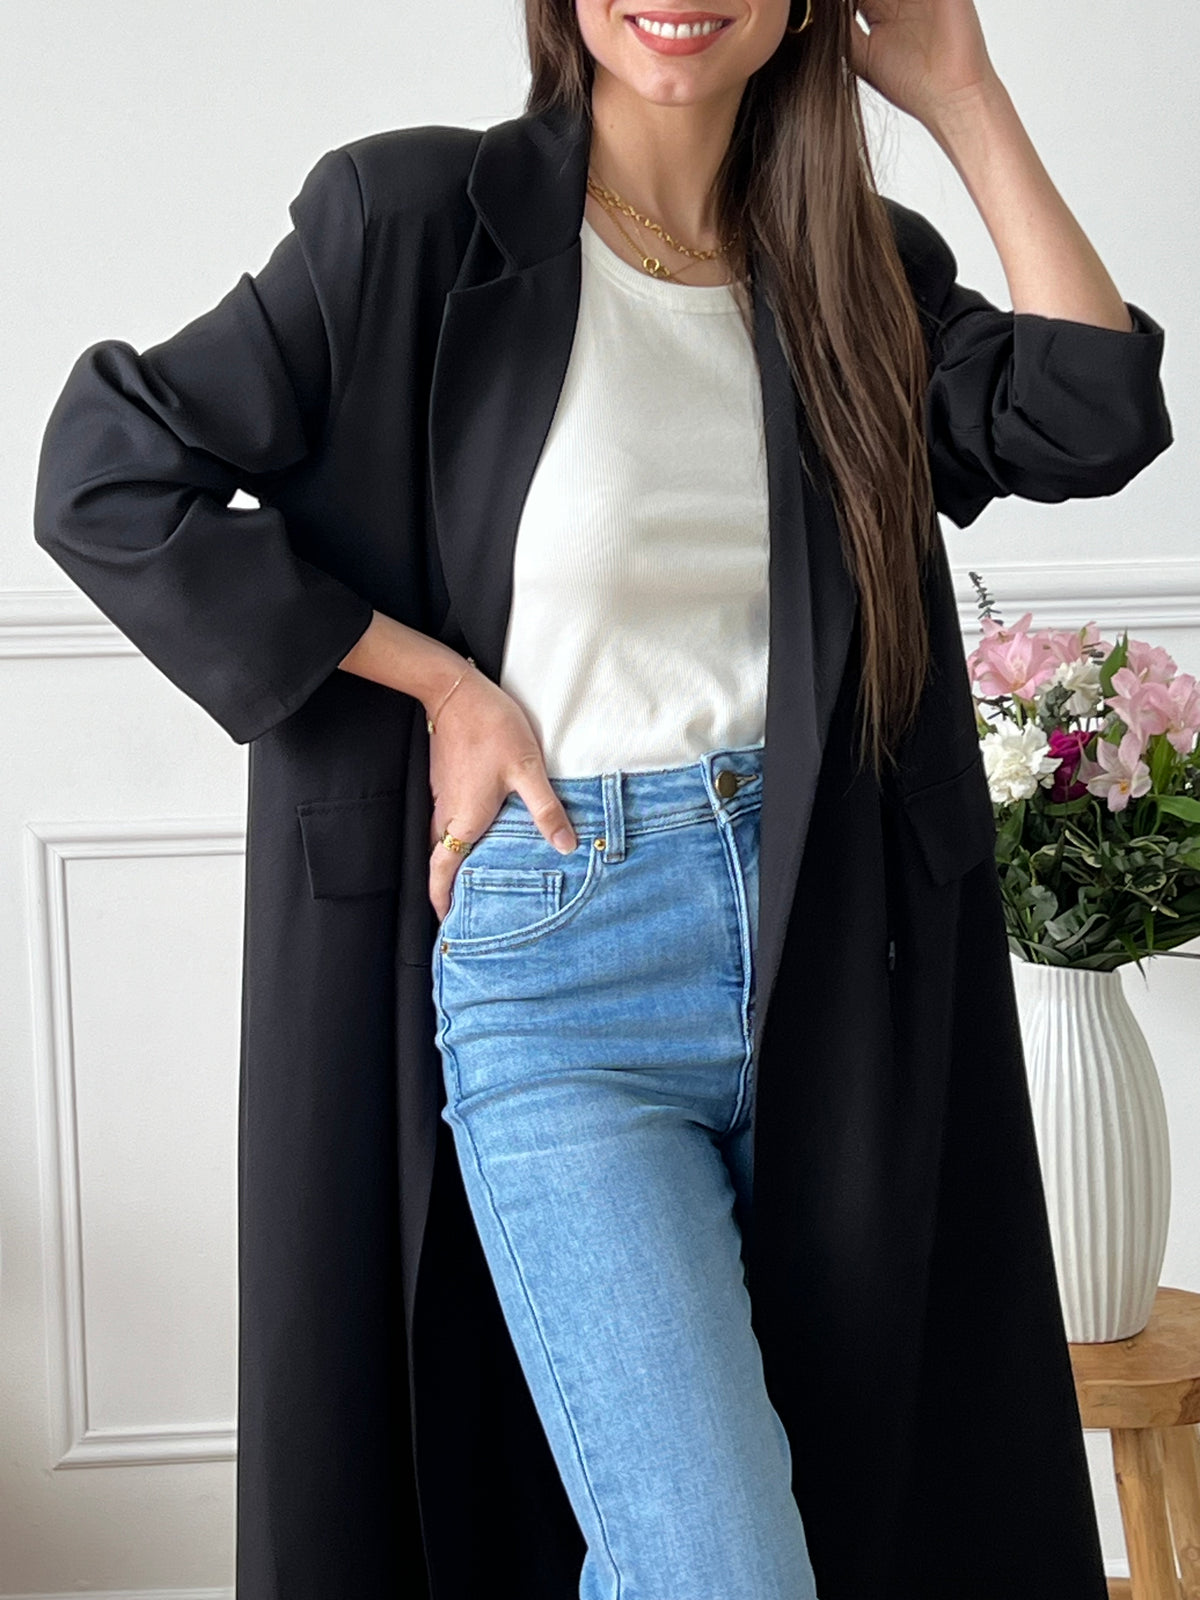 Le manteau noir Amiya est conçu spécialement pour les femmes en quête de confort et de style. Avec sa longueur parfaite, il offre une allure élégante sans compromettre le confort. Parfait pour toutes les occasions, ce manteau est un indispensable de votre garde-robe.